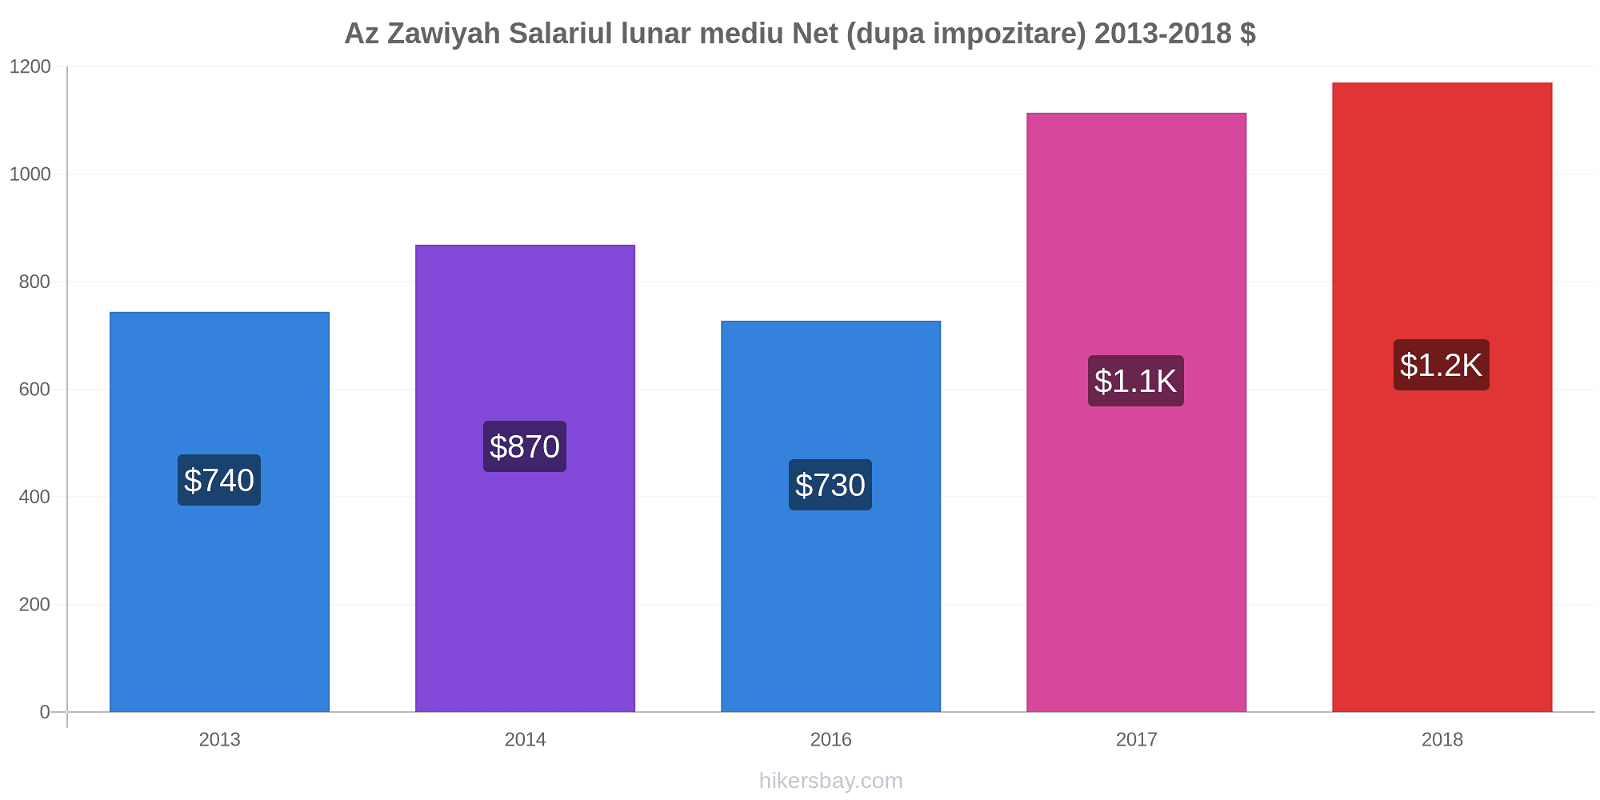 Az Zawiyah modificări de preț Salariul lunar mediu Net (dupa impozitare) hikersbay.com